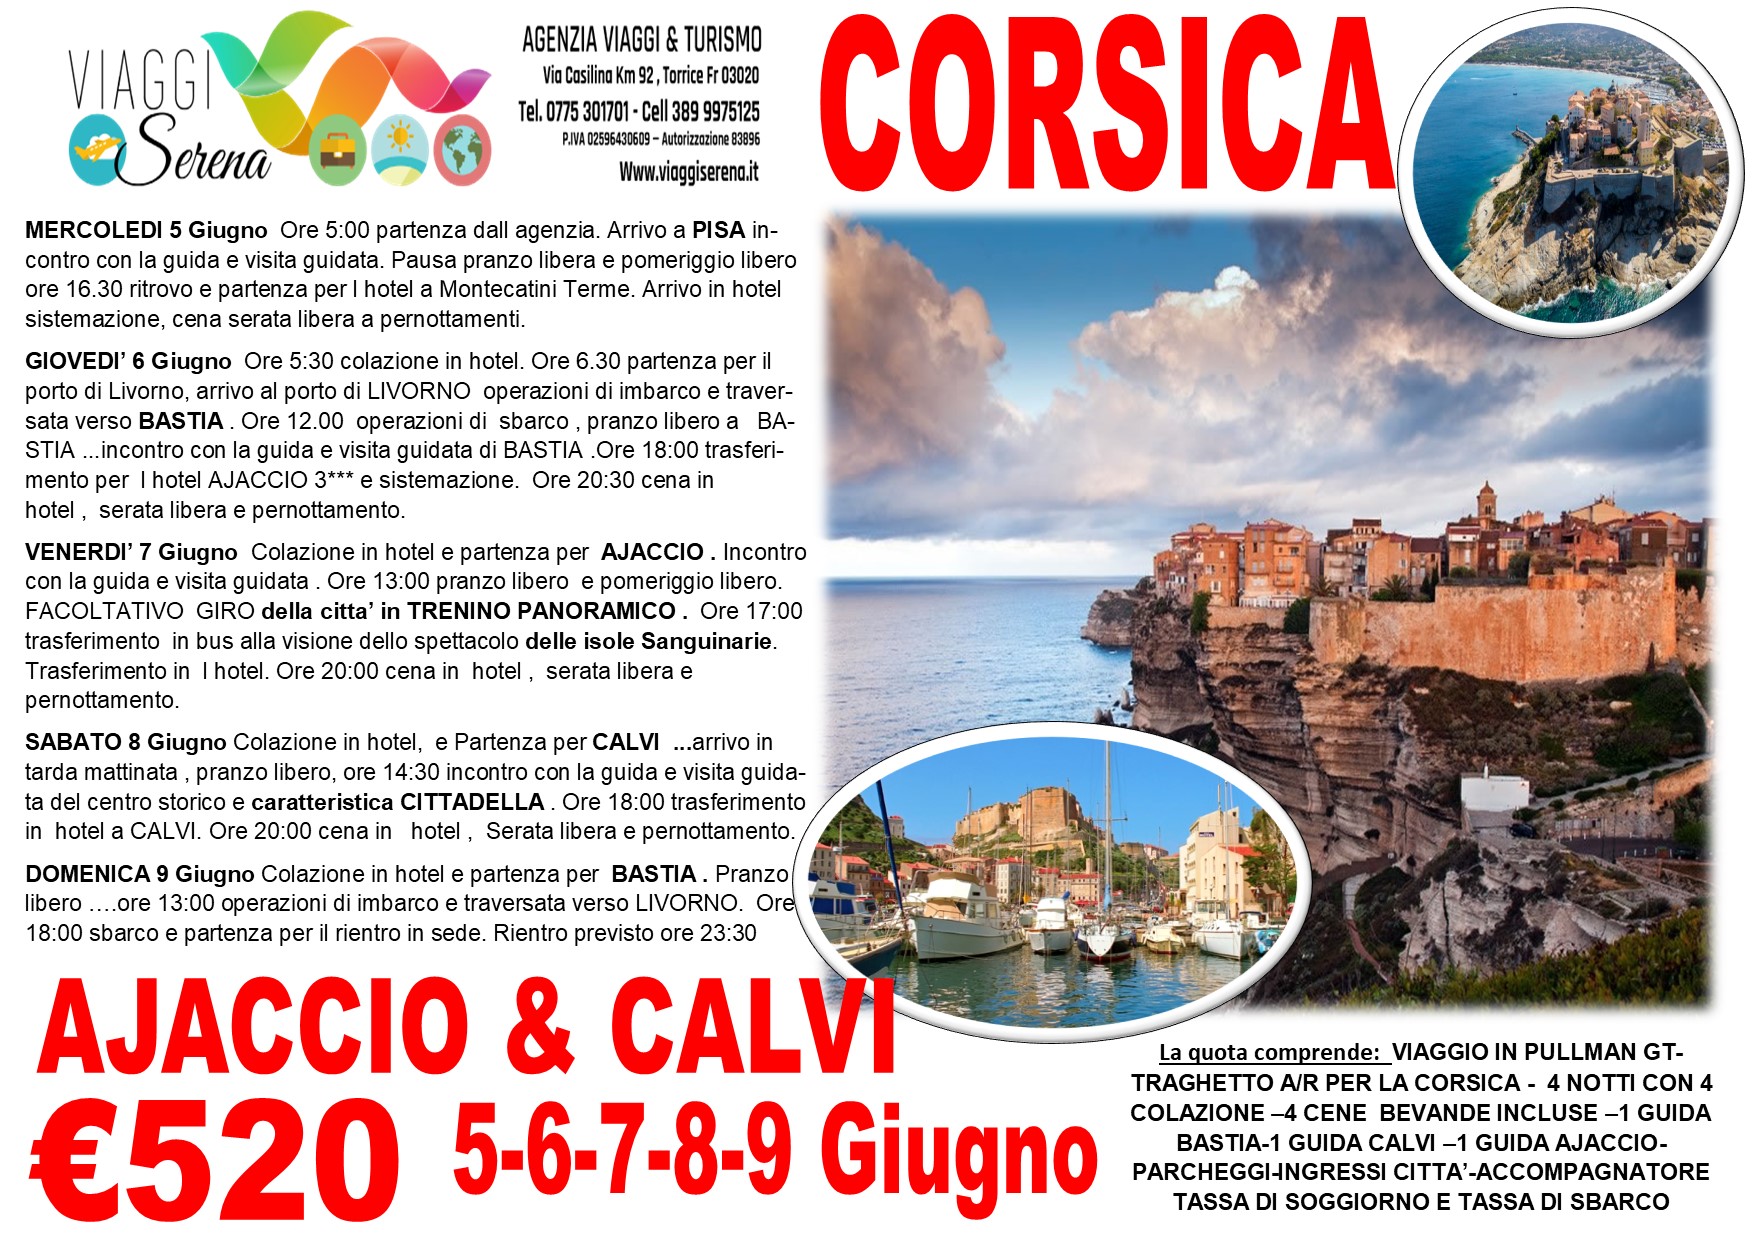 Viaggi di gruppo: Tour della CORSICA , Ajaccio, Bastia & Calvi 5-6-7-8-9 Giugno €520,00